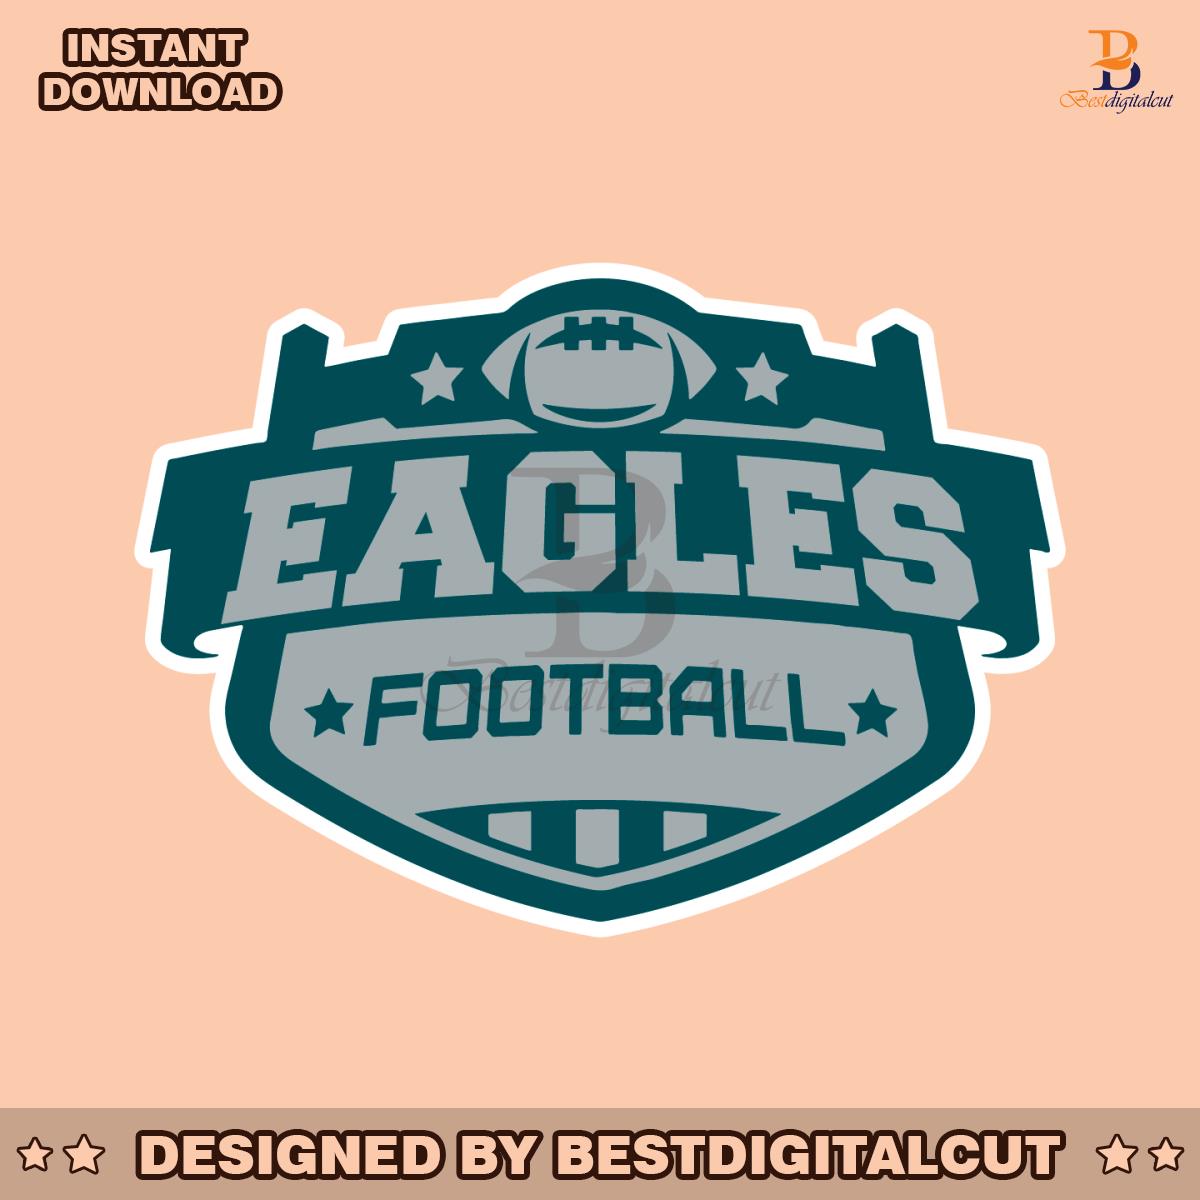 eagles-football-svg-cricut-digital-download